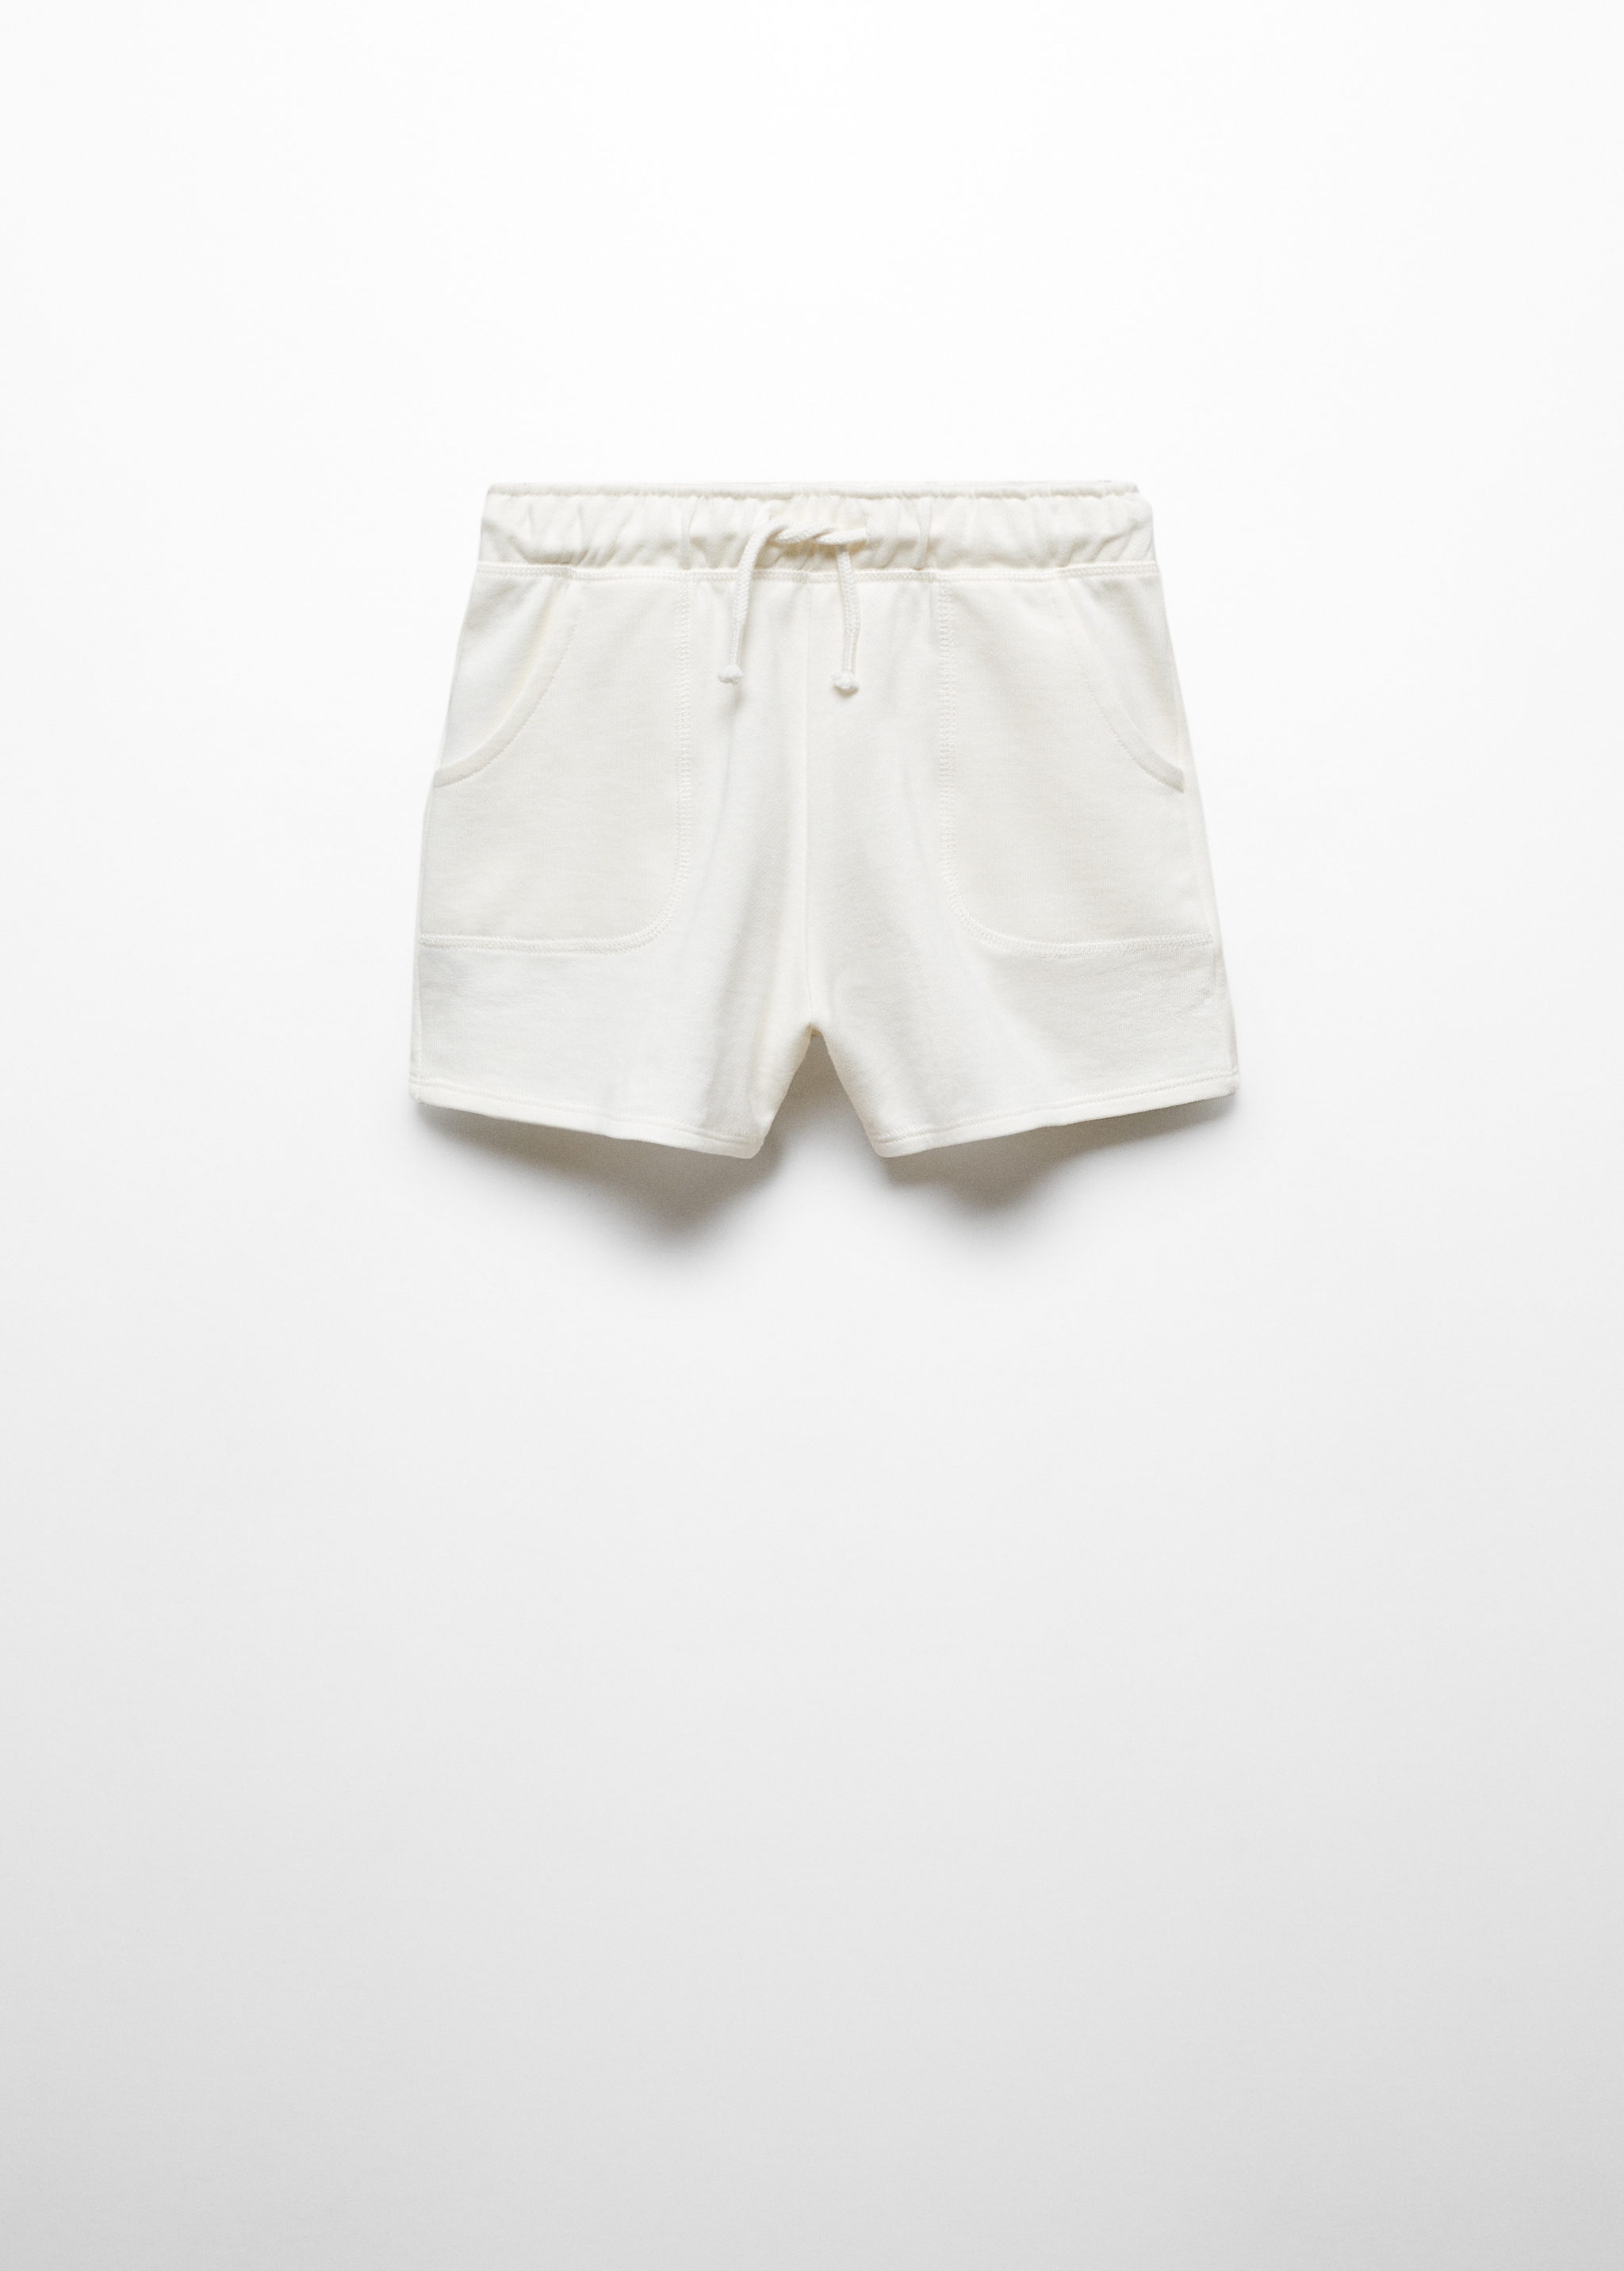 Short algodón cintura elástica - Artículo sin modelo